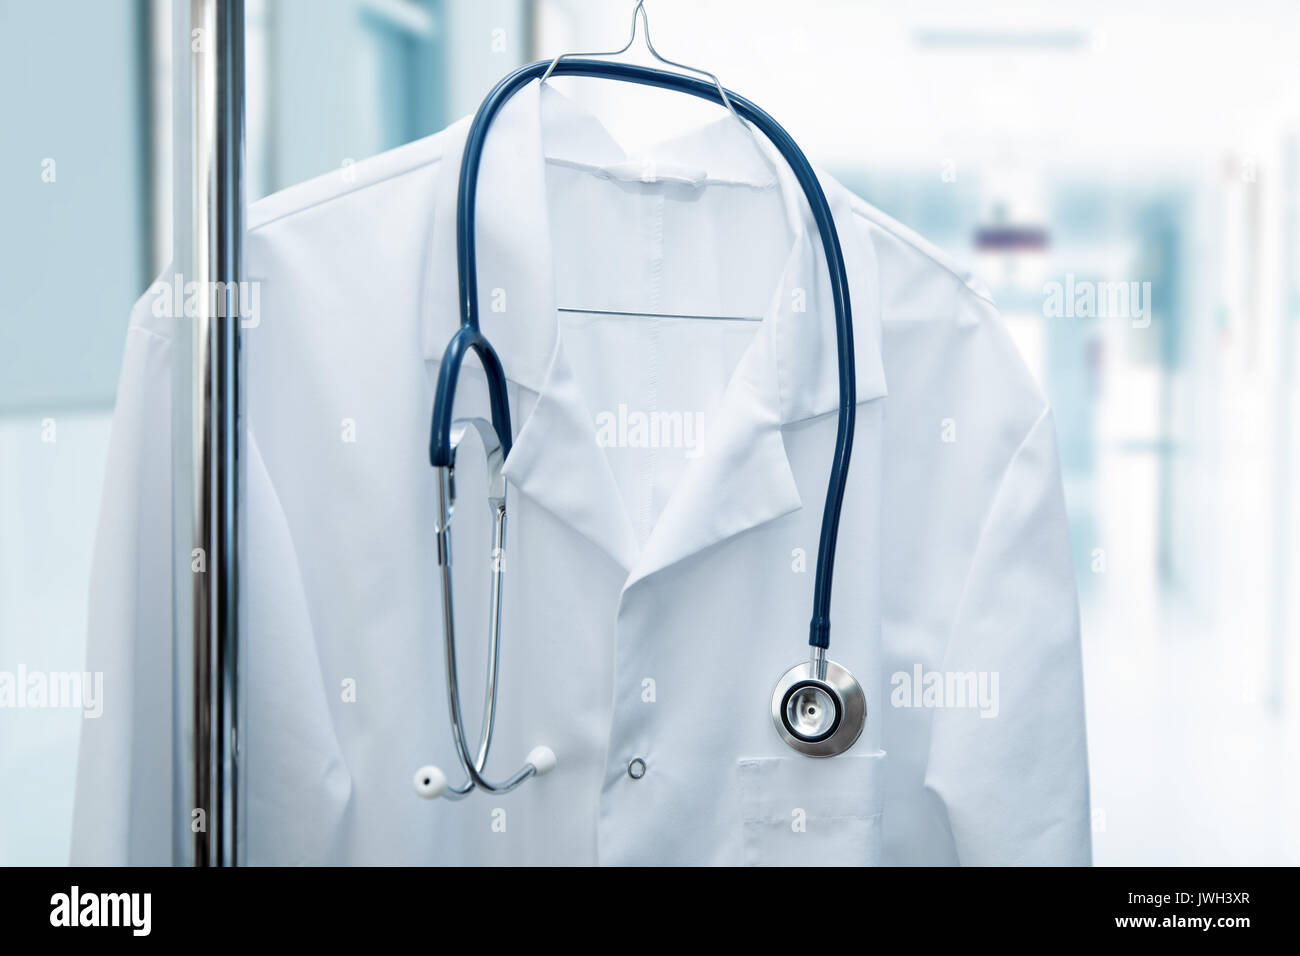 Offre d'emploi - médecin blanc manteau sur le porte-manteau dans le couloir de l'hôpital Banque D'Images